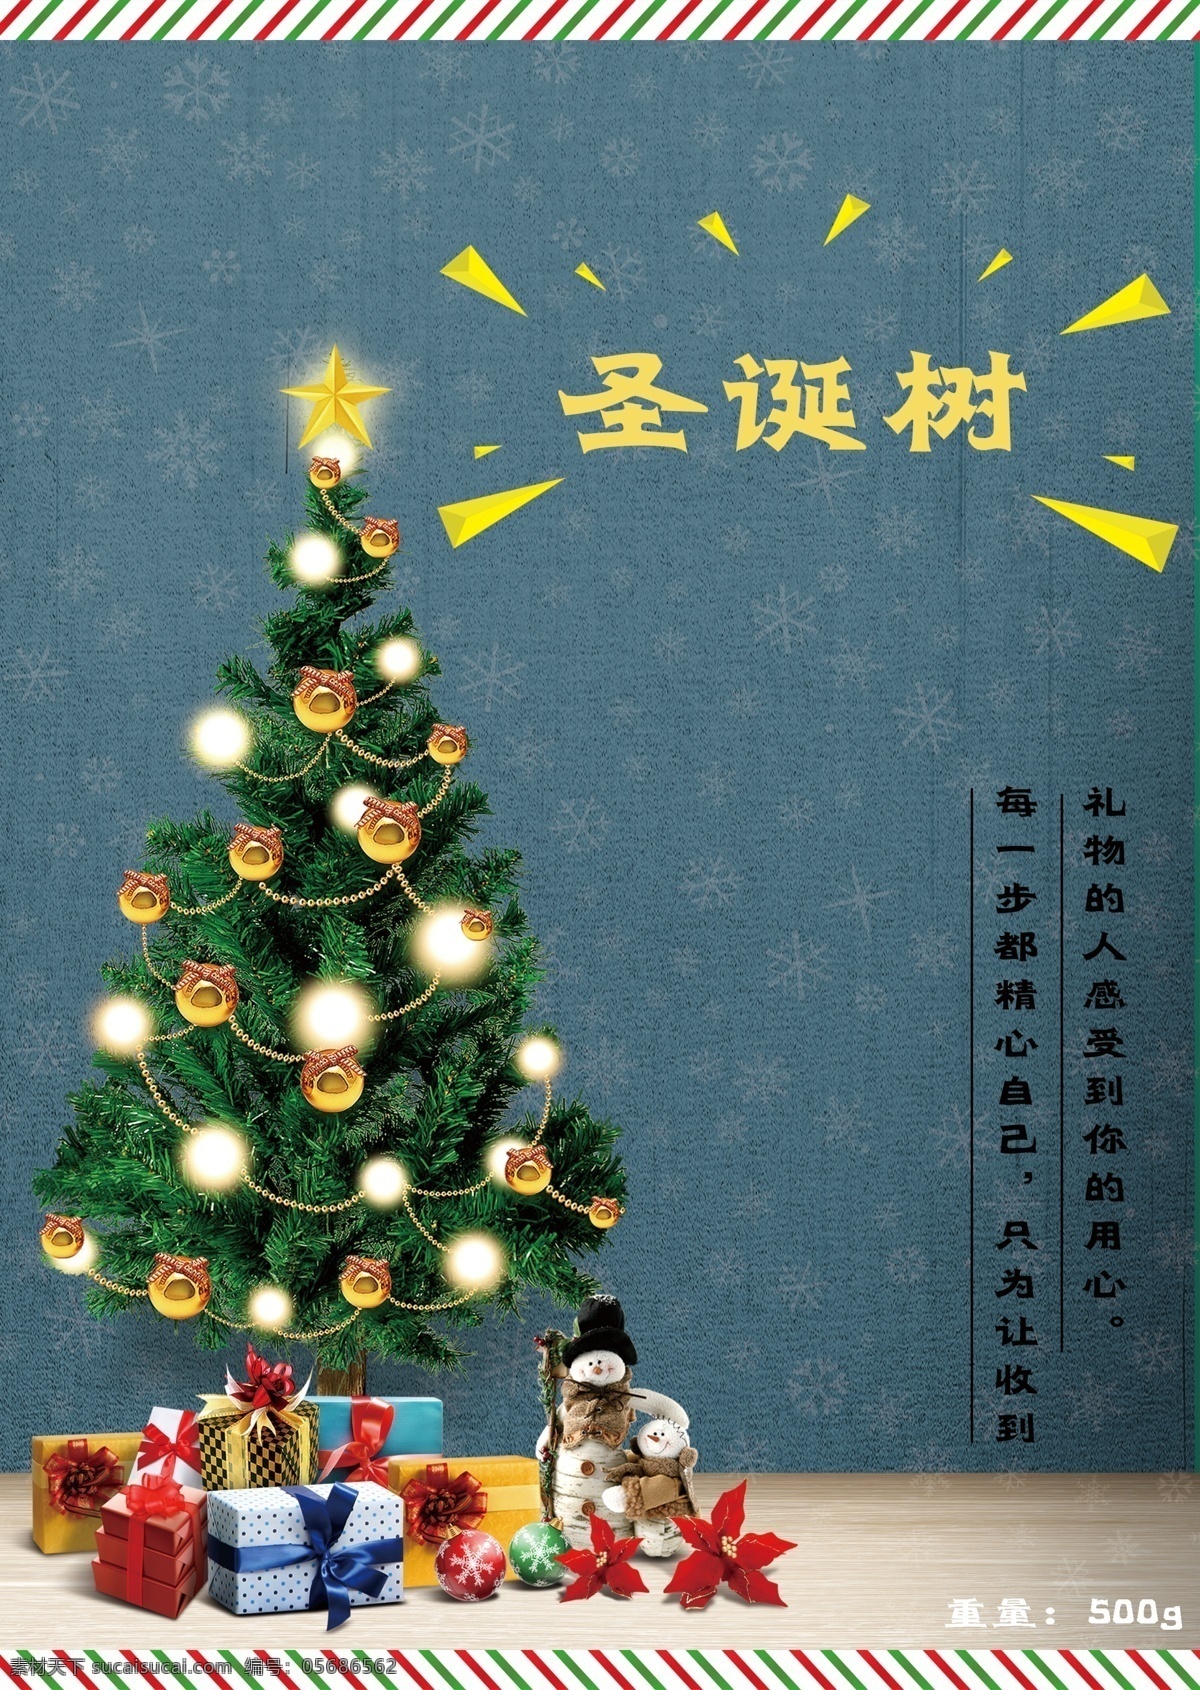 圣诞树 礼品 节日 海报 圣诞节 装饰海报 促销